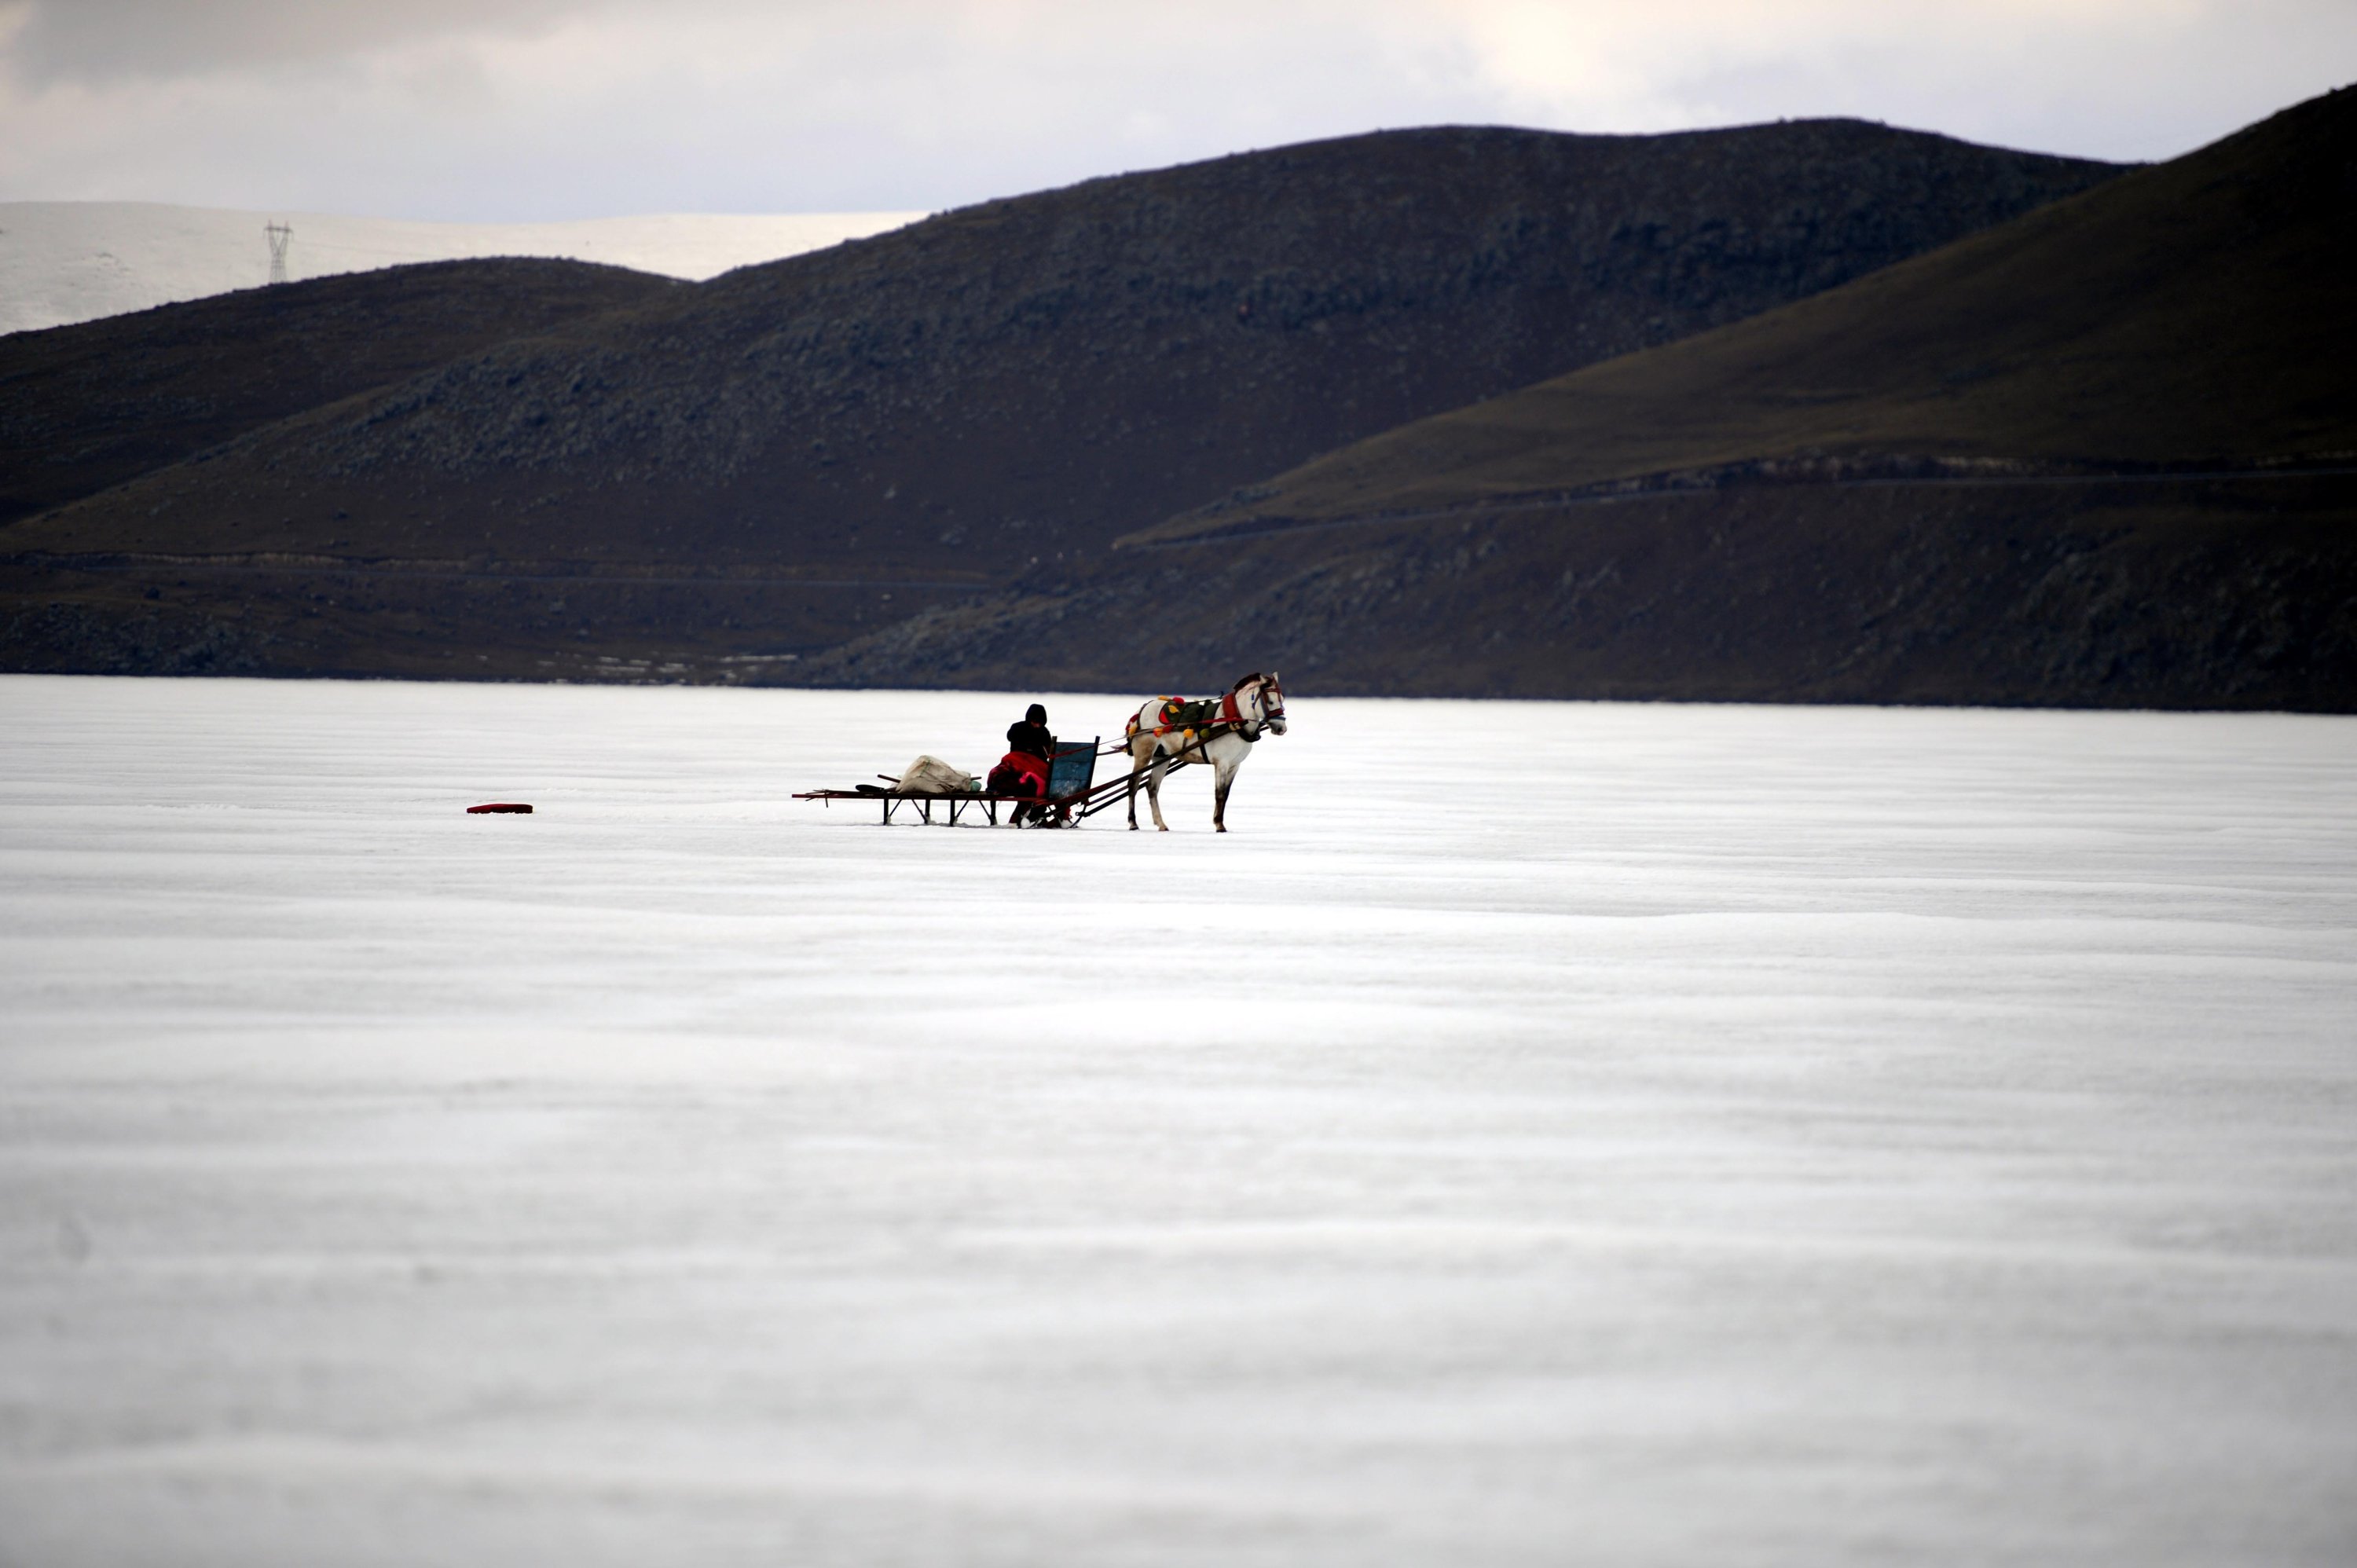 Donmuş Geldir Gölü'nde atlı kızak, Kars, Türkiye, 3 Mart 2022. (AA)